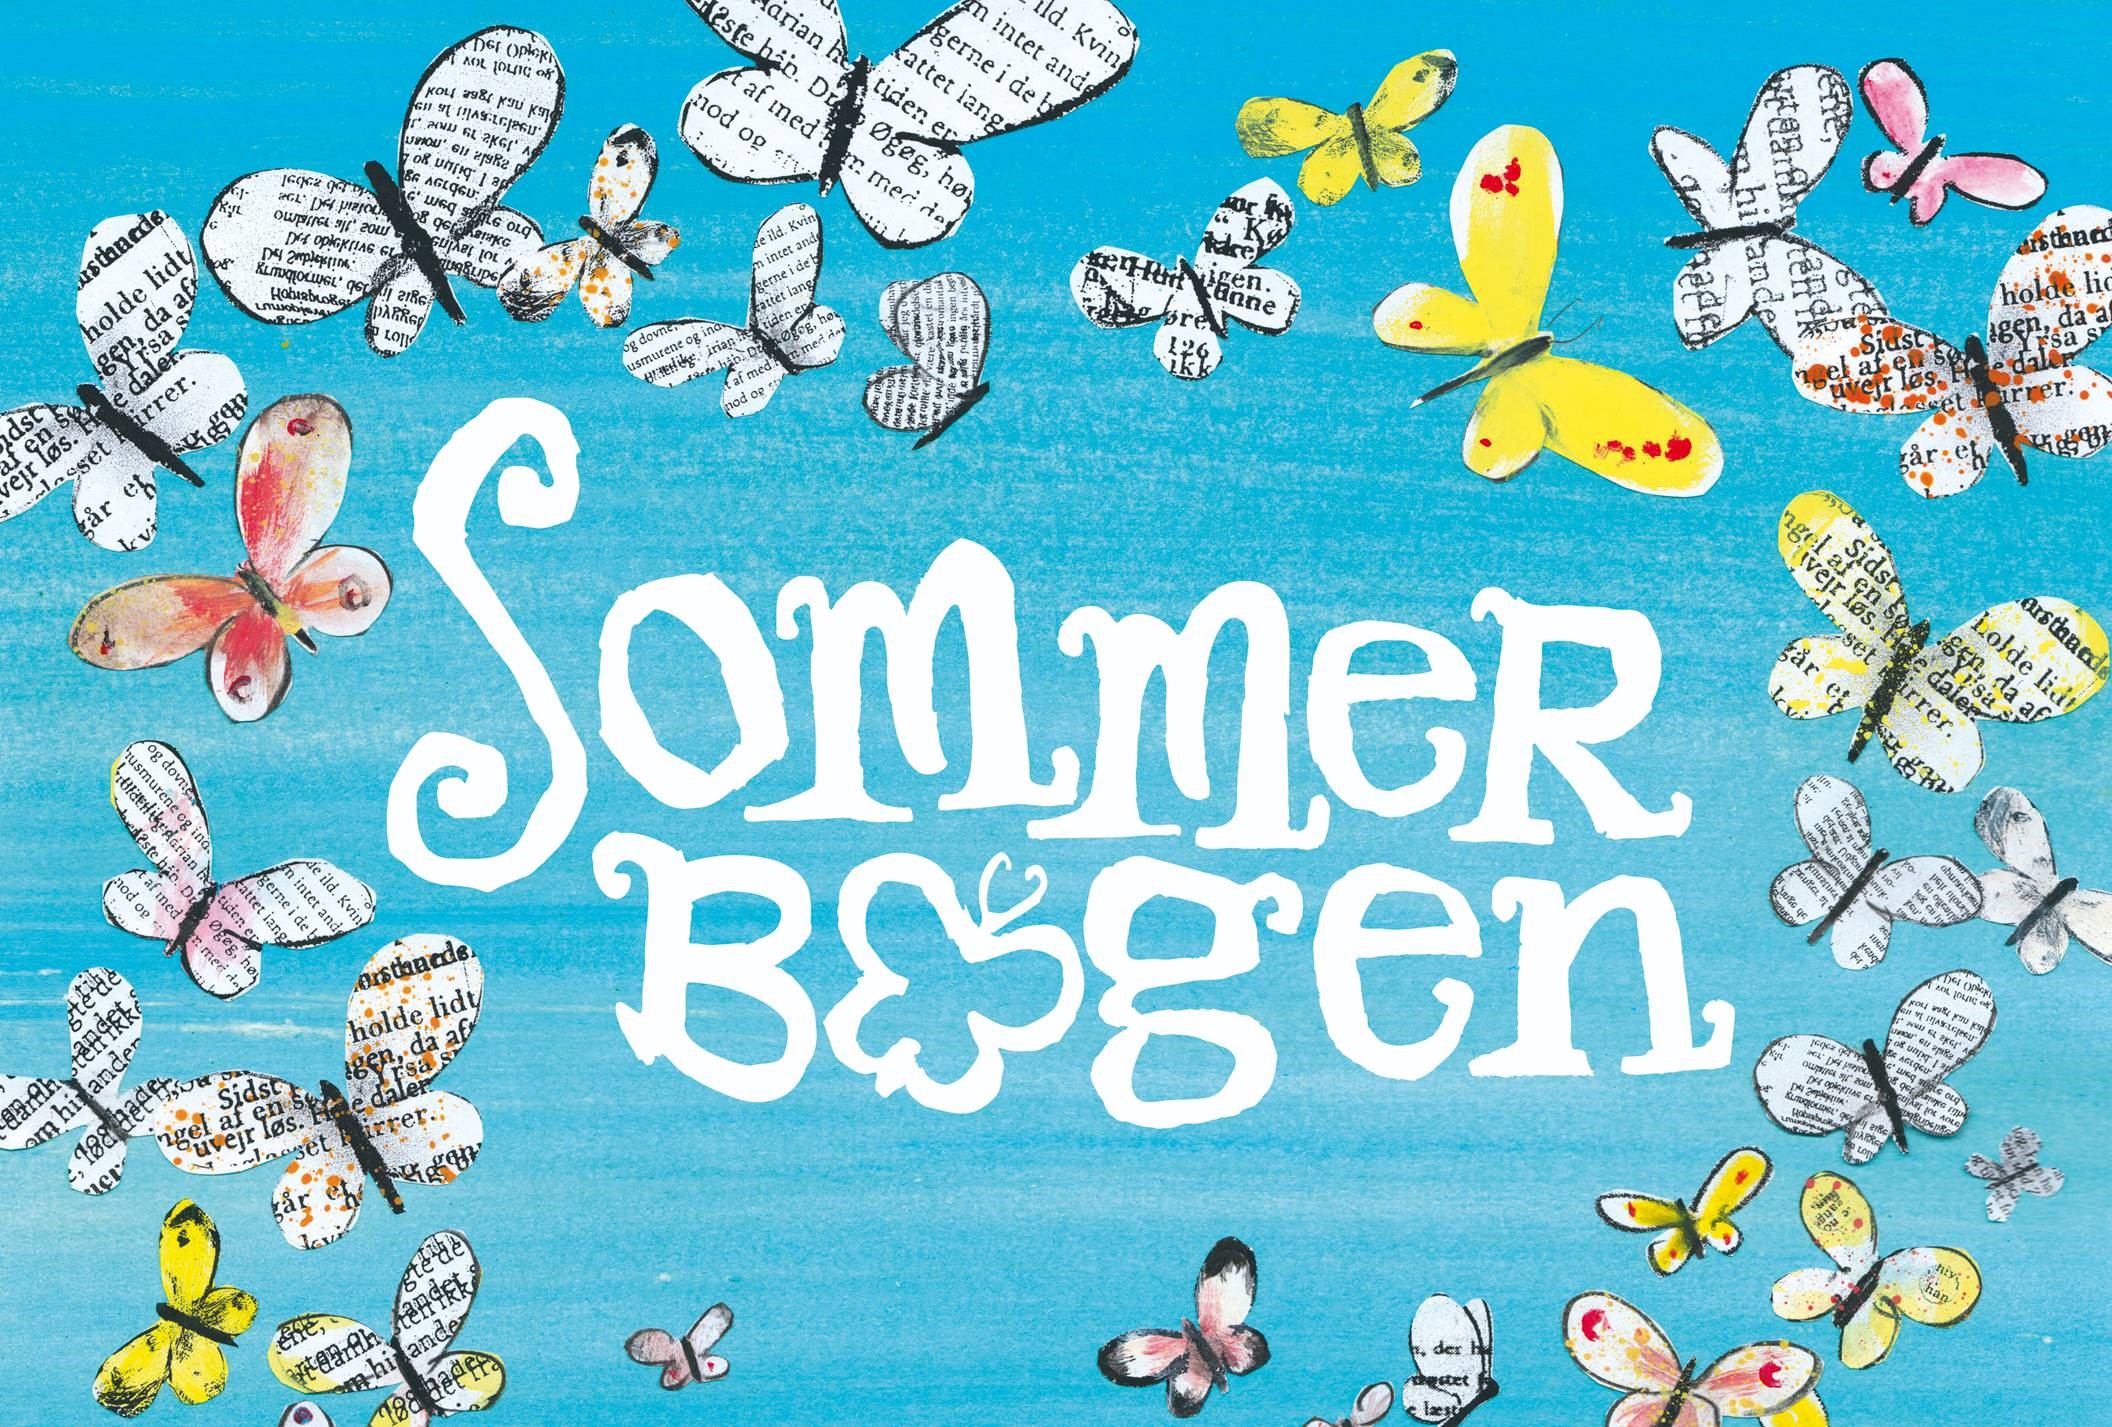 Sommerbogens logo